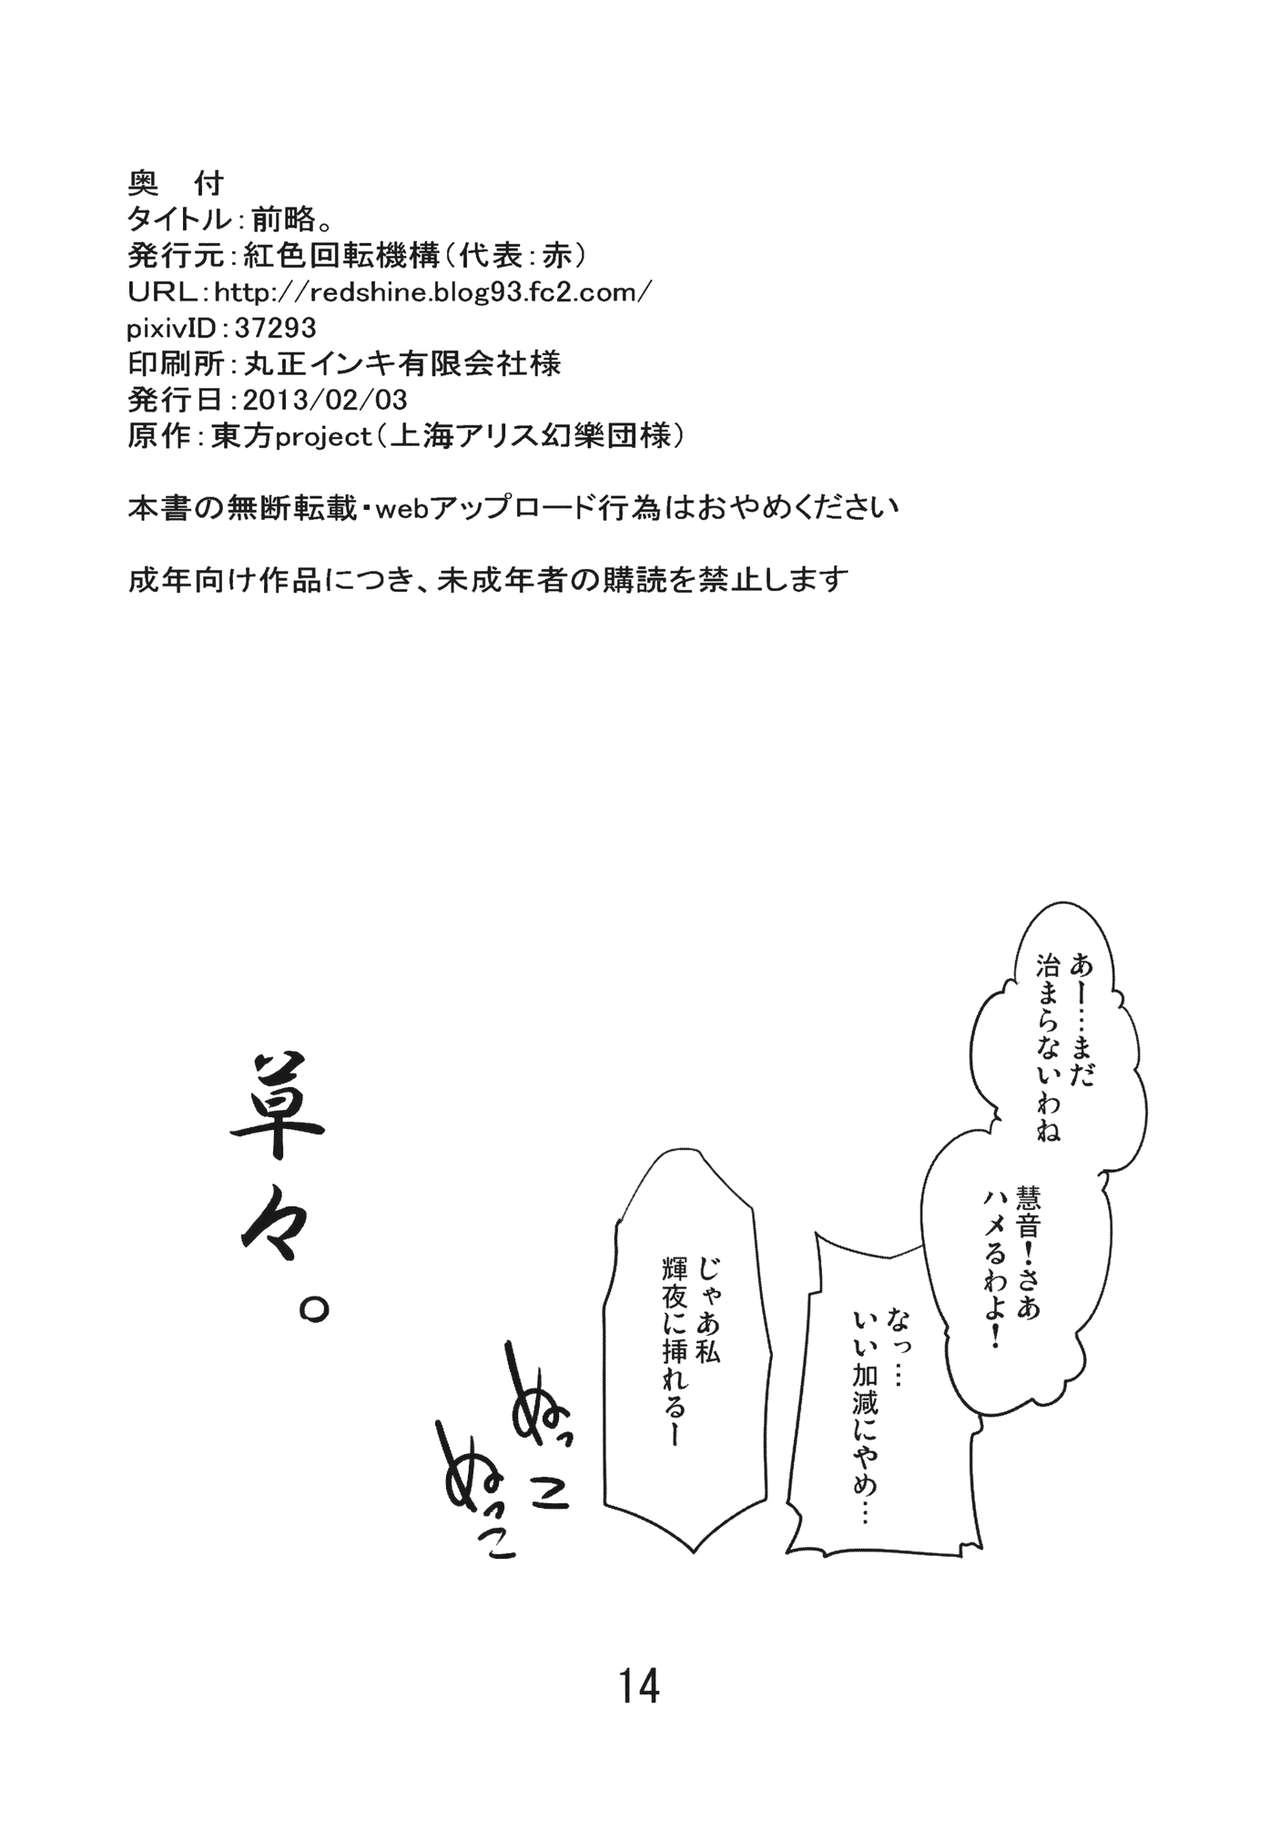 (Daikyuushuu Touhousai 7) [Beniiro Kaitenkikou (Seki)] Zenryaku. (Touhou Project) (大⑨州東方祭7) [紅色回転機構 (赤)] 前略。 (東方Project)